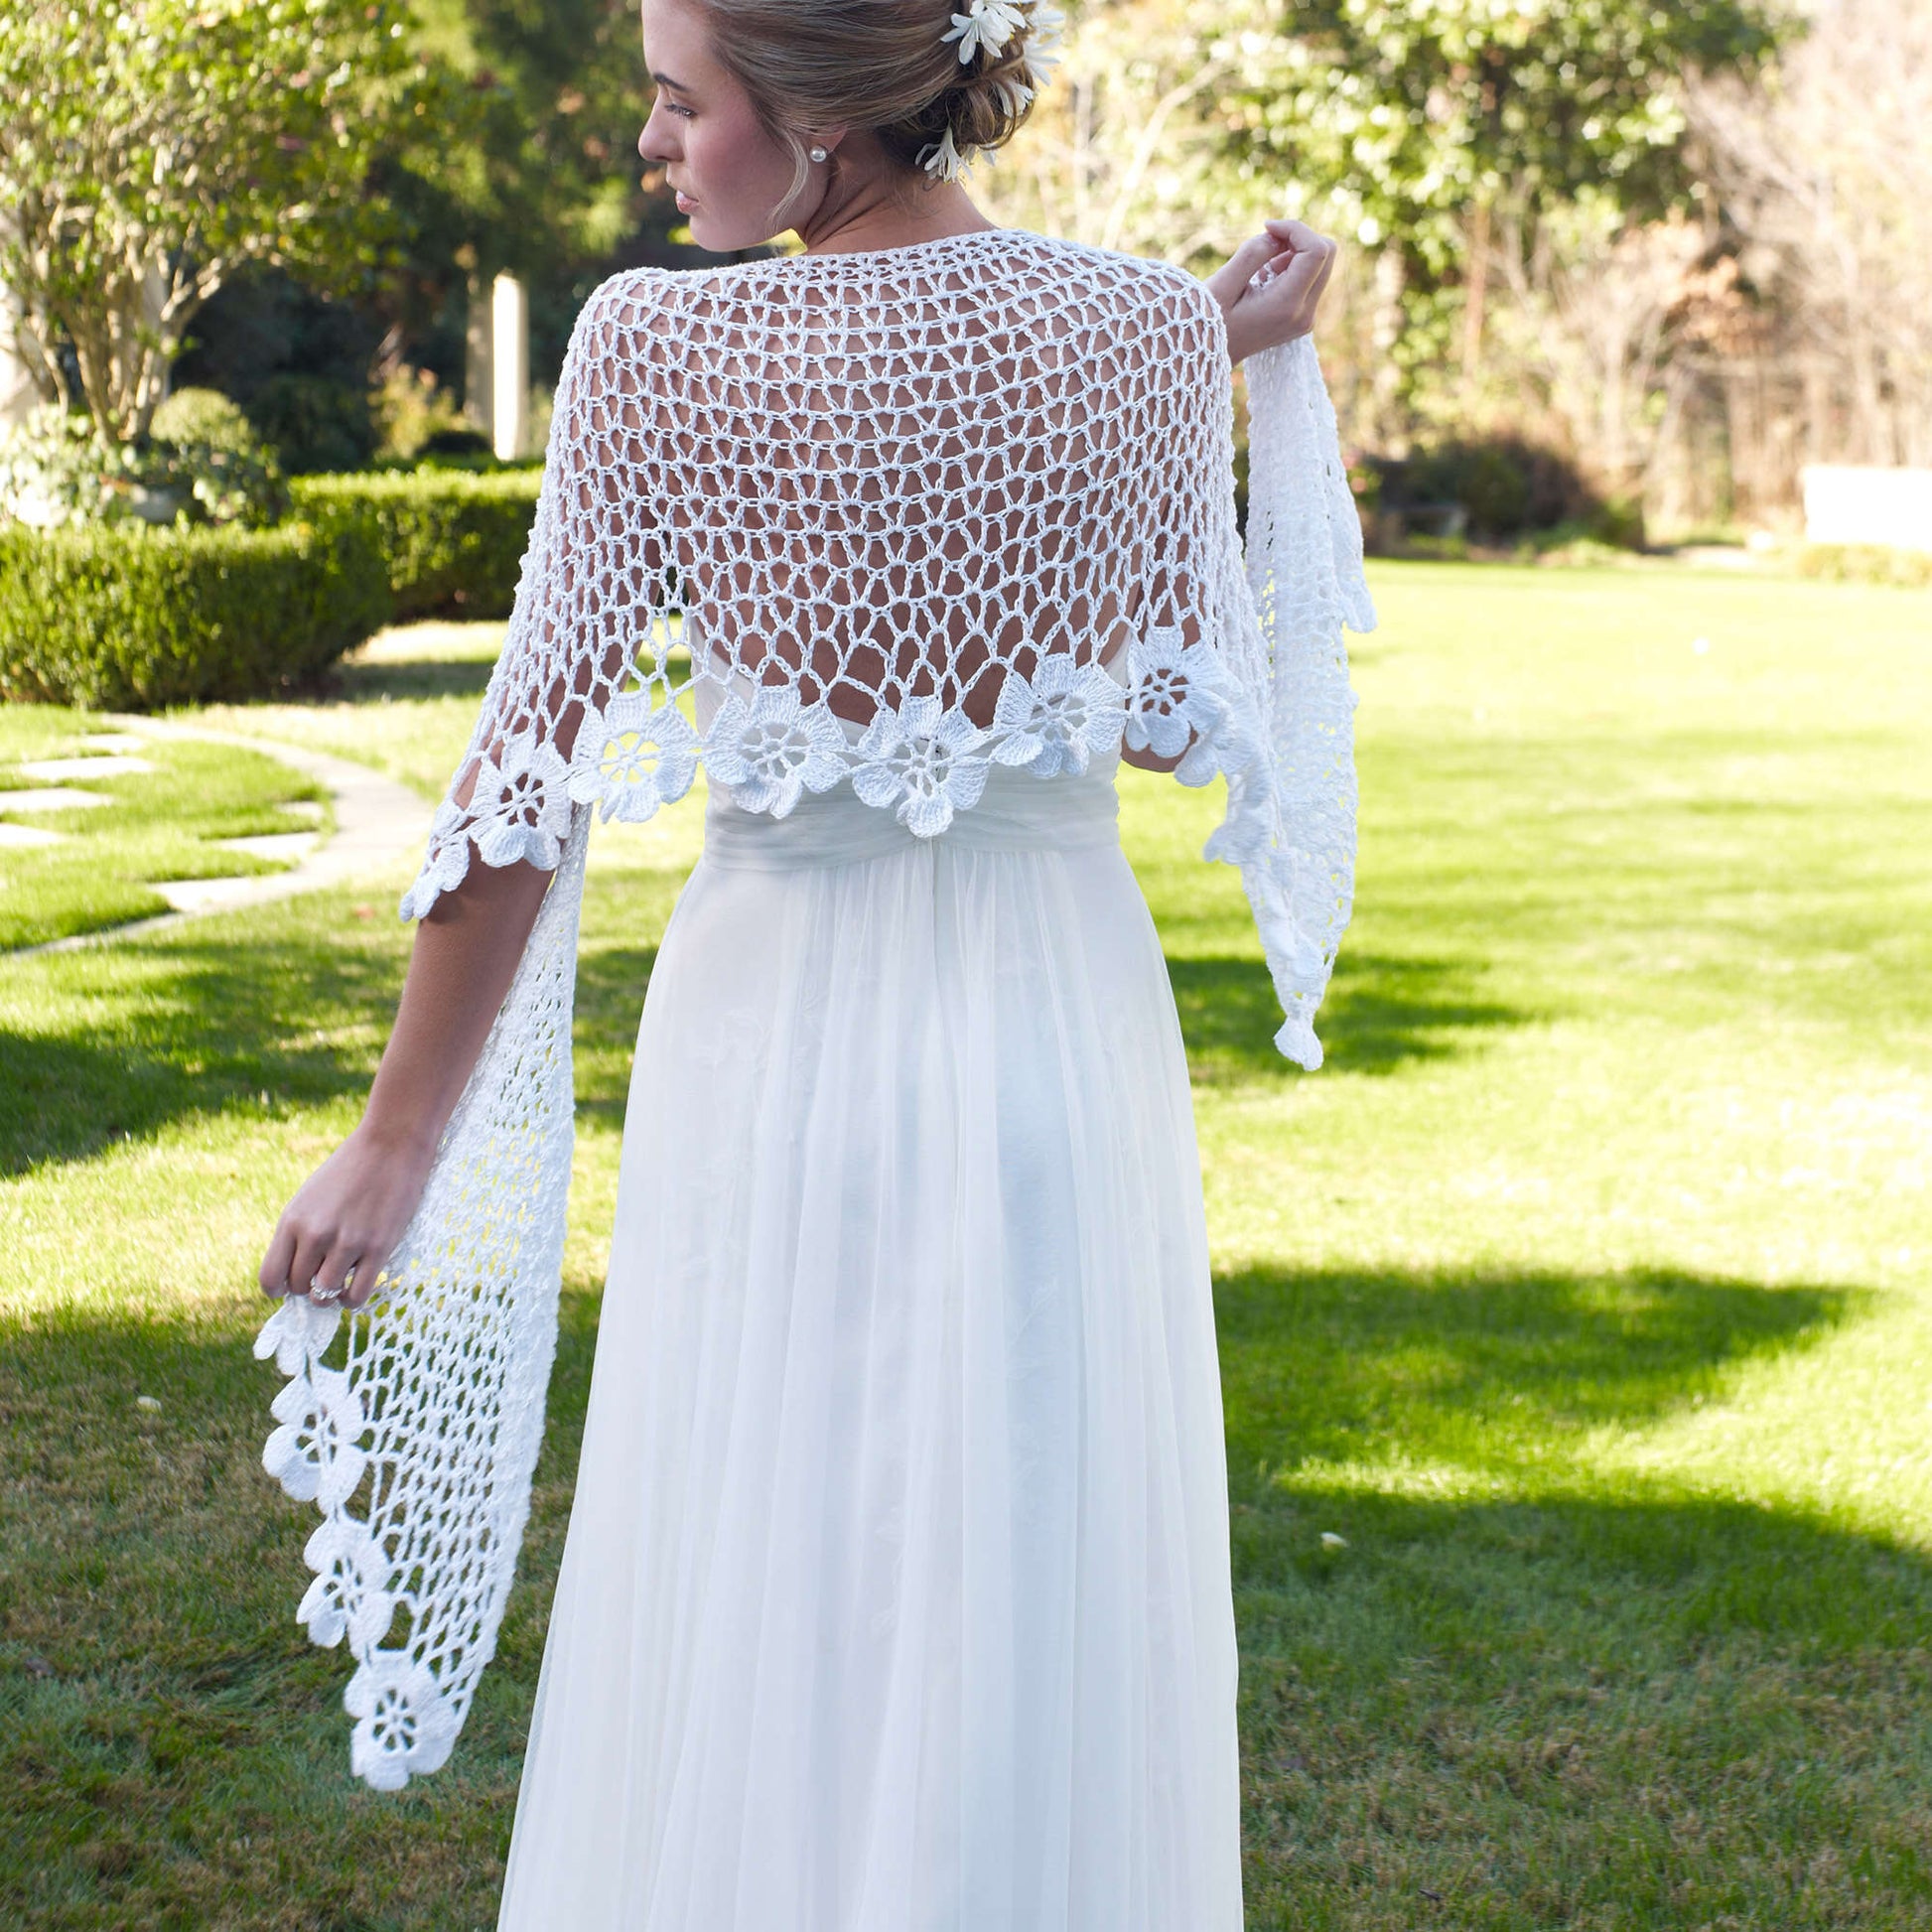 Bridal Shawl in Aunt Lydia's Fashion Crochet Thread Size 3 Solids